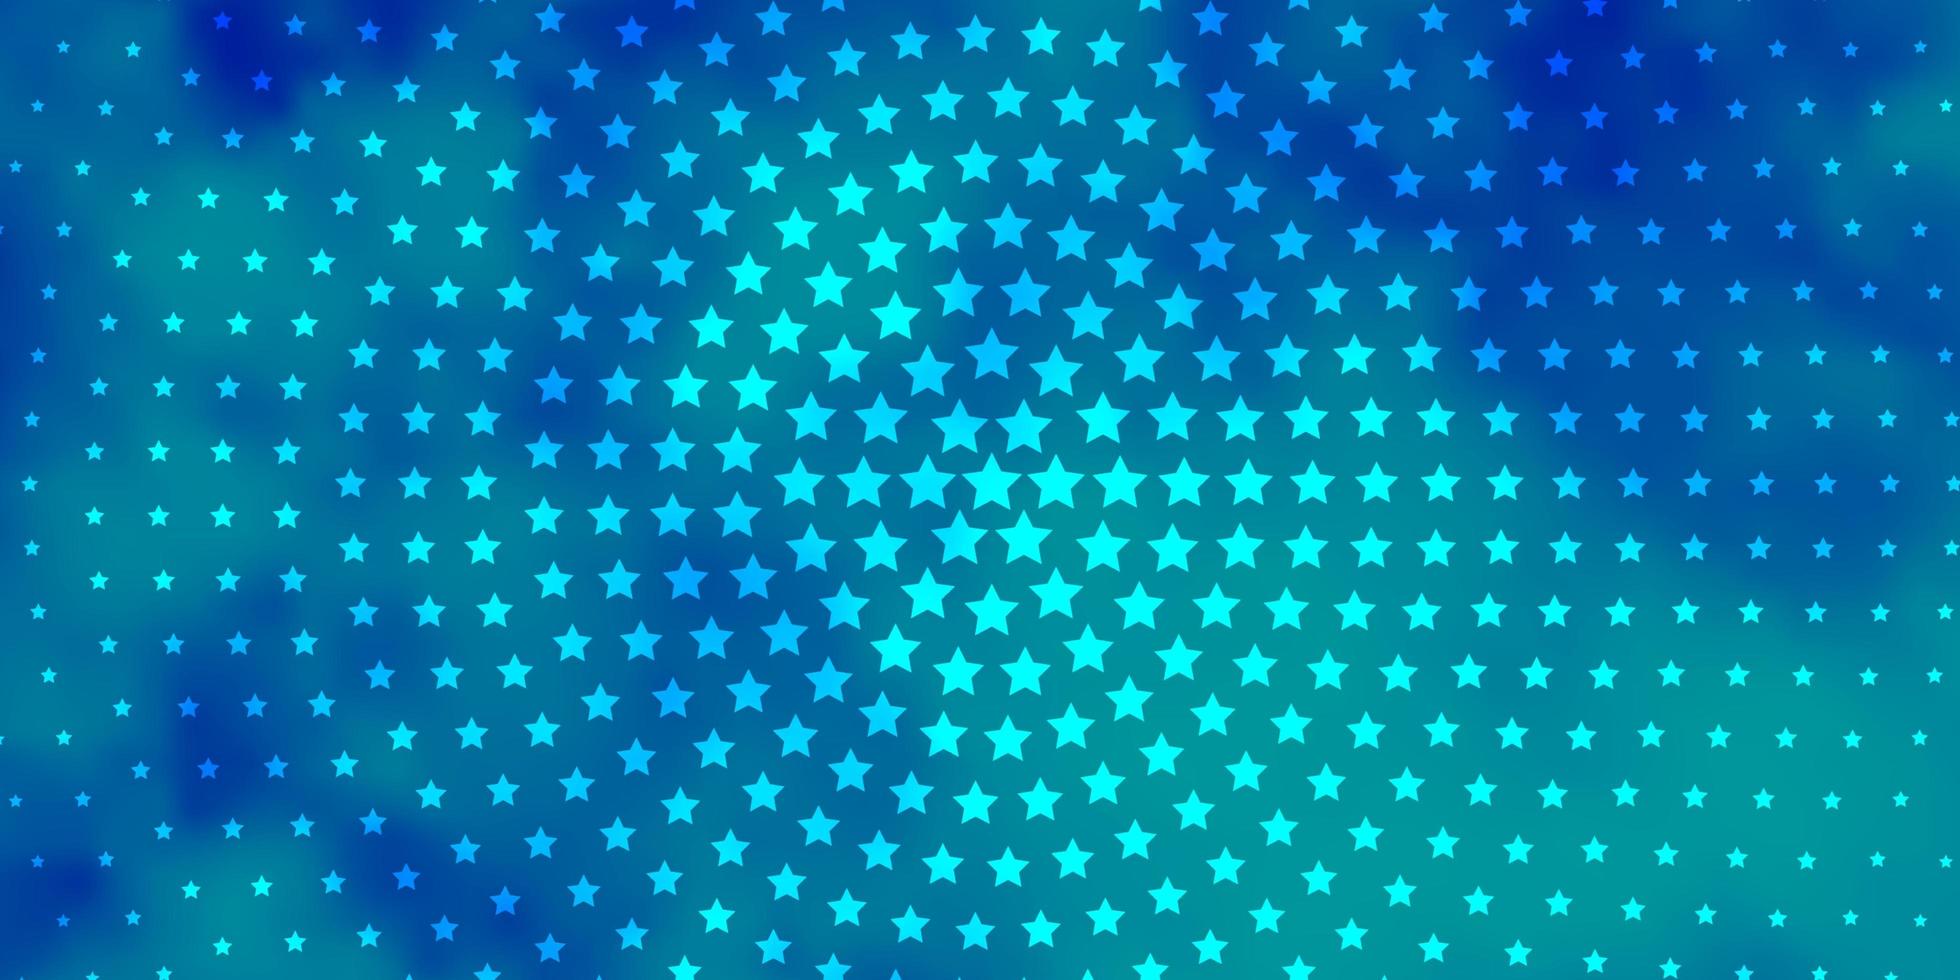 fond de vecteur bleu clair avec illustration colorée de petites et grandes étoiles dans un style abstrait avec thème étoiles dégradées pour téléphones portables